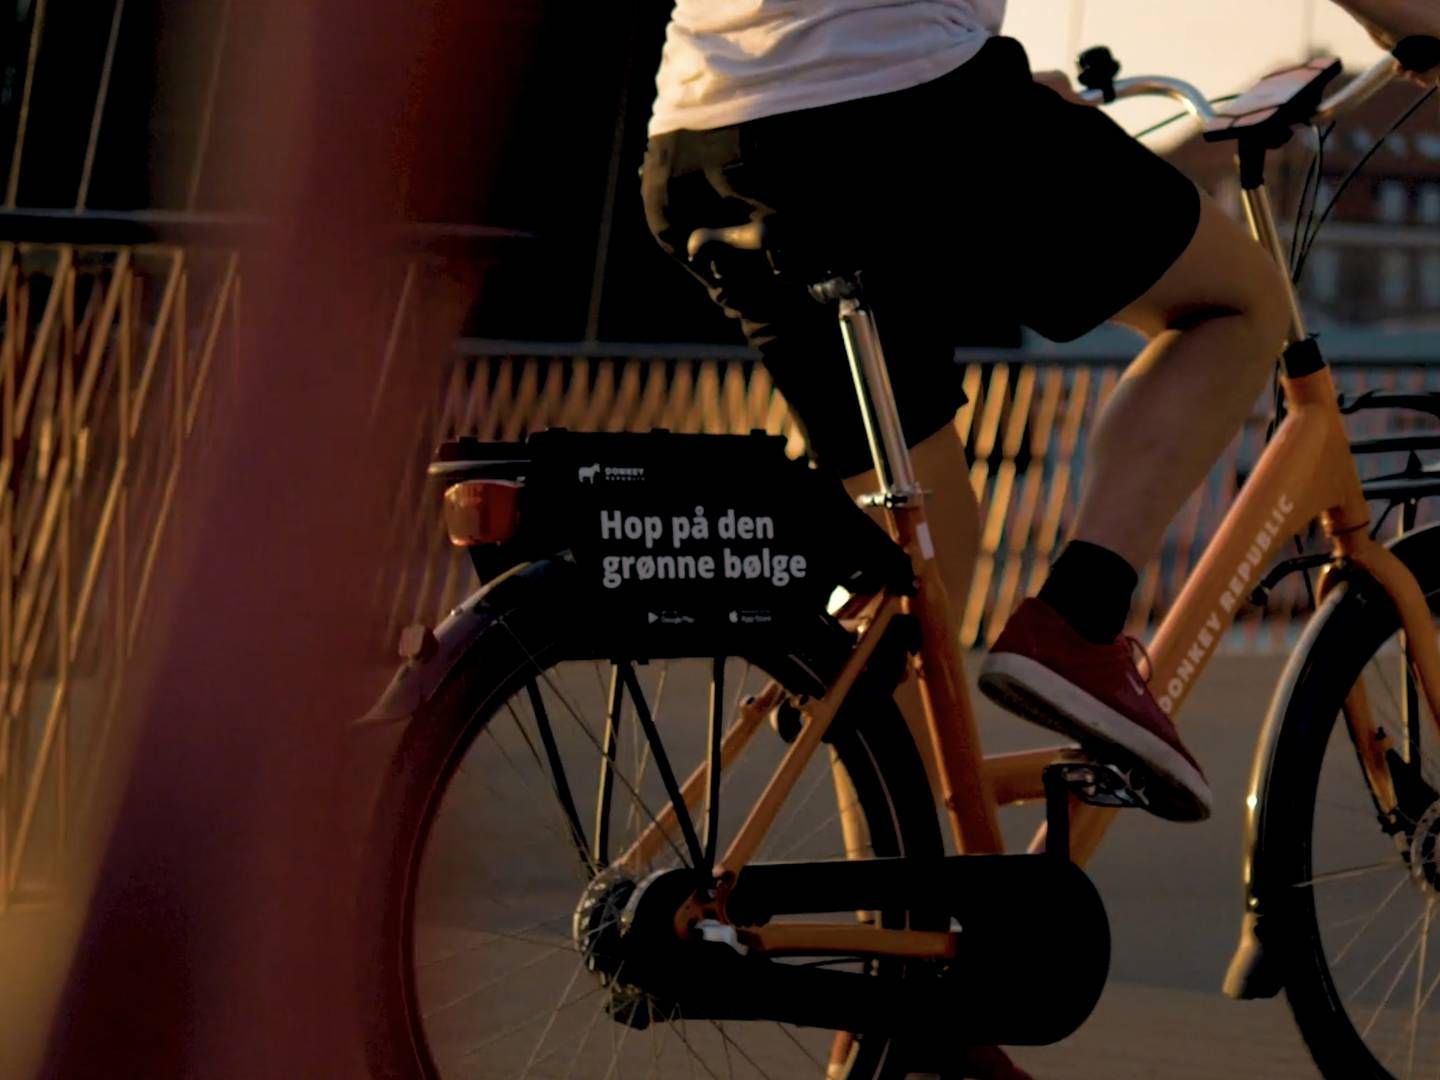 Der er blevet kørt mere end 2,5 mio. ture på de orange cykler i tredje kvartal. | Foto: Pr/donkey Republic